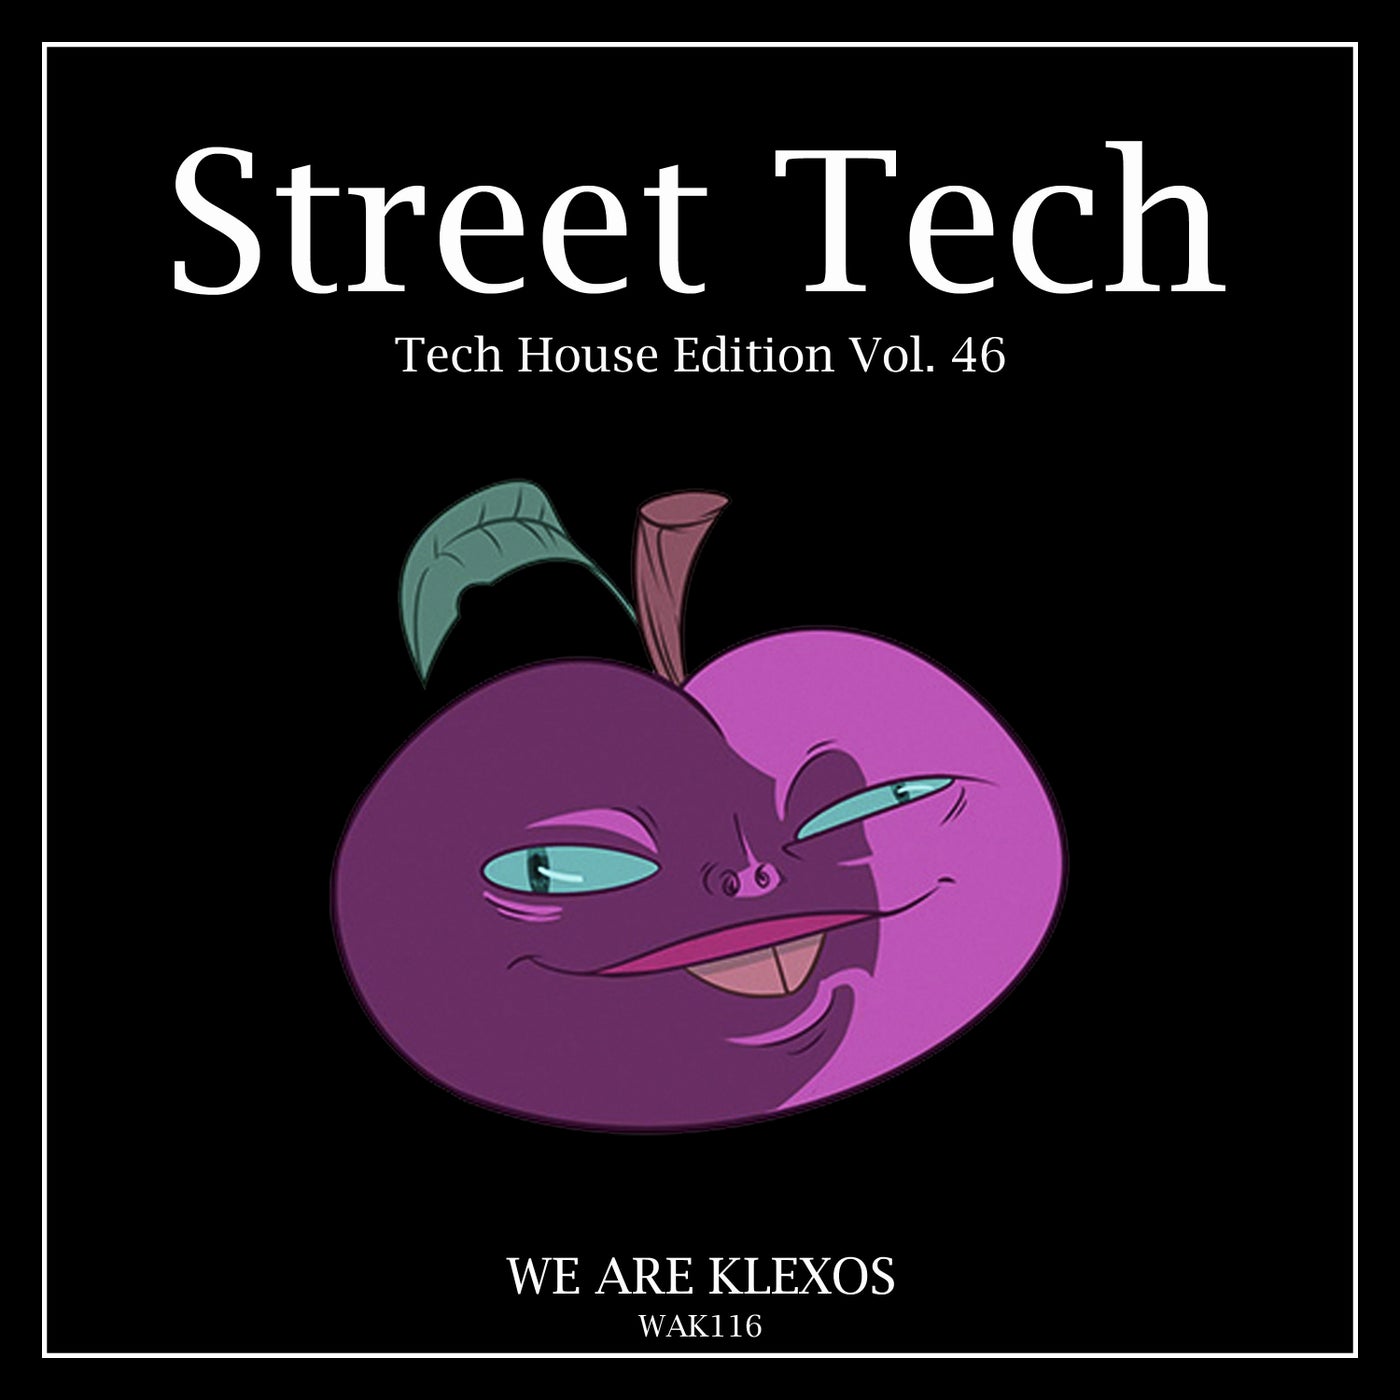 Street Tech, Vol. 46